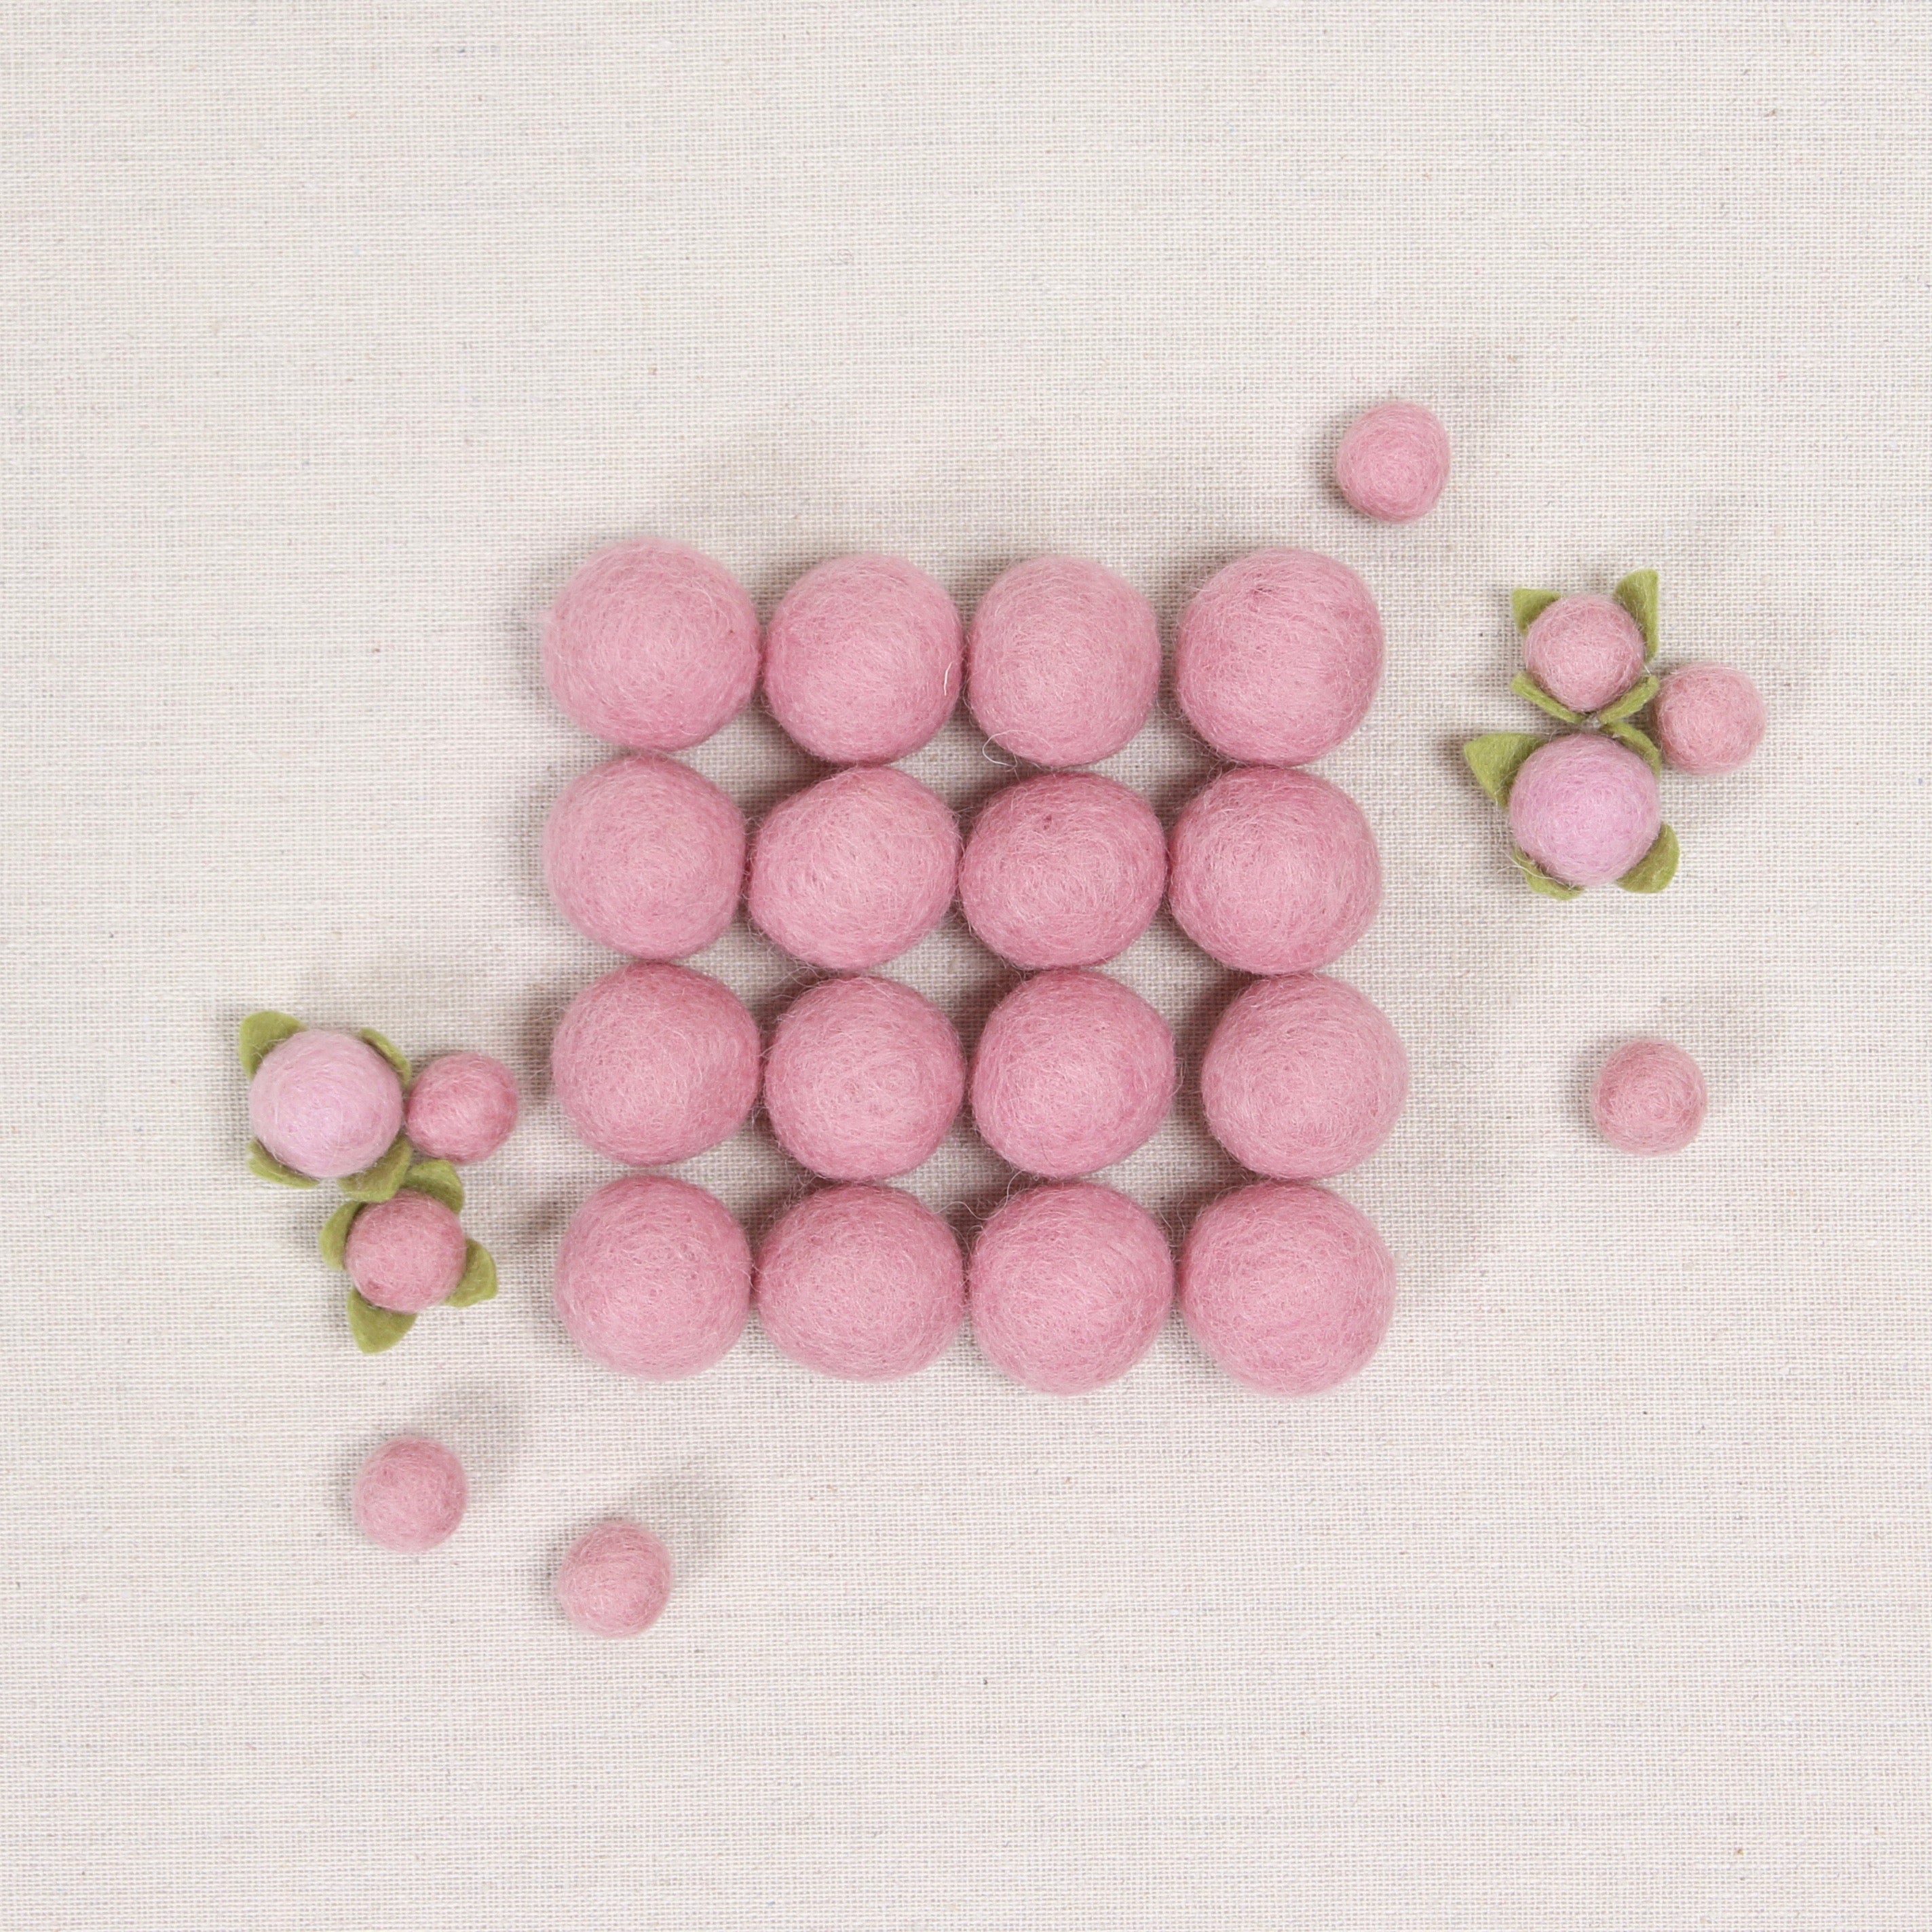 Pink Cotton Balls